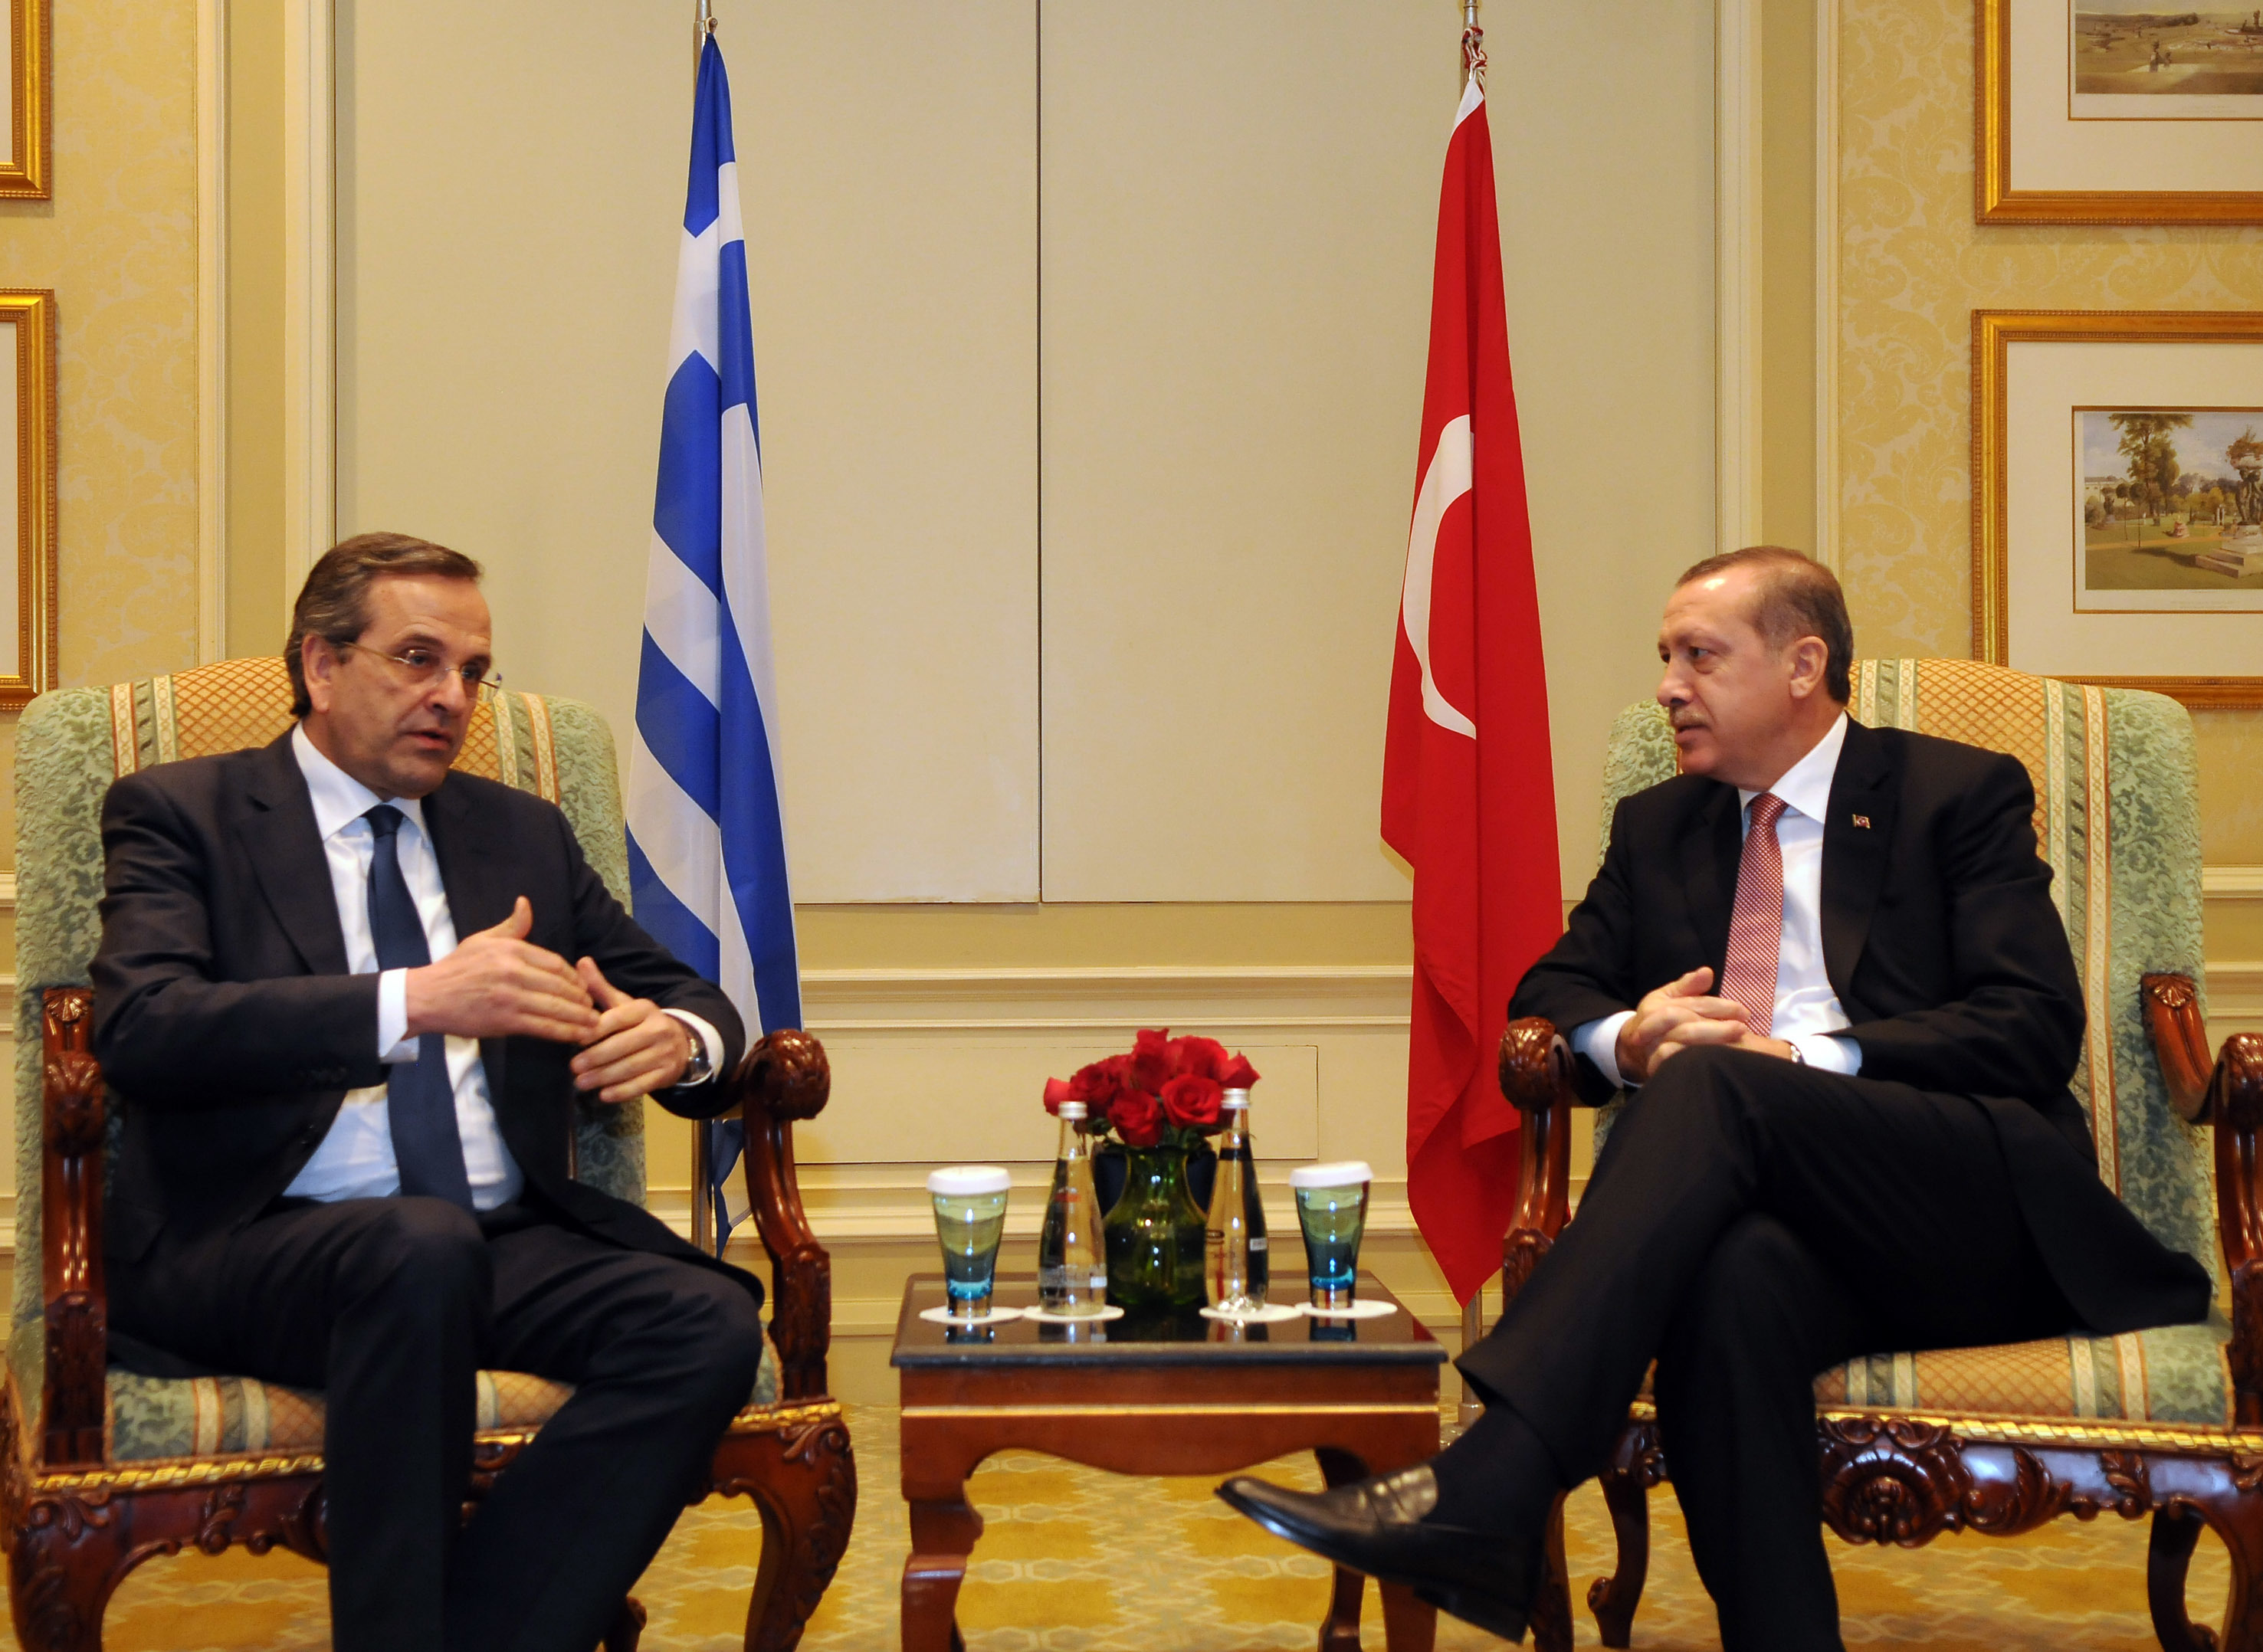 Ερντογάν: “Τι θα συζητήσω με τον Σαμαρά” – Συνέντευξη του Τούρκου πρωθυπουργού